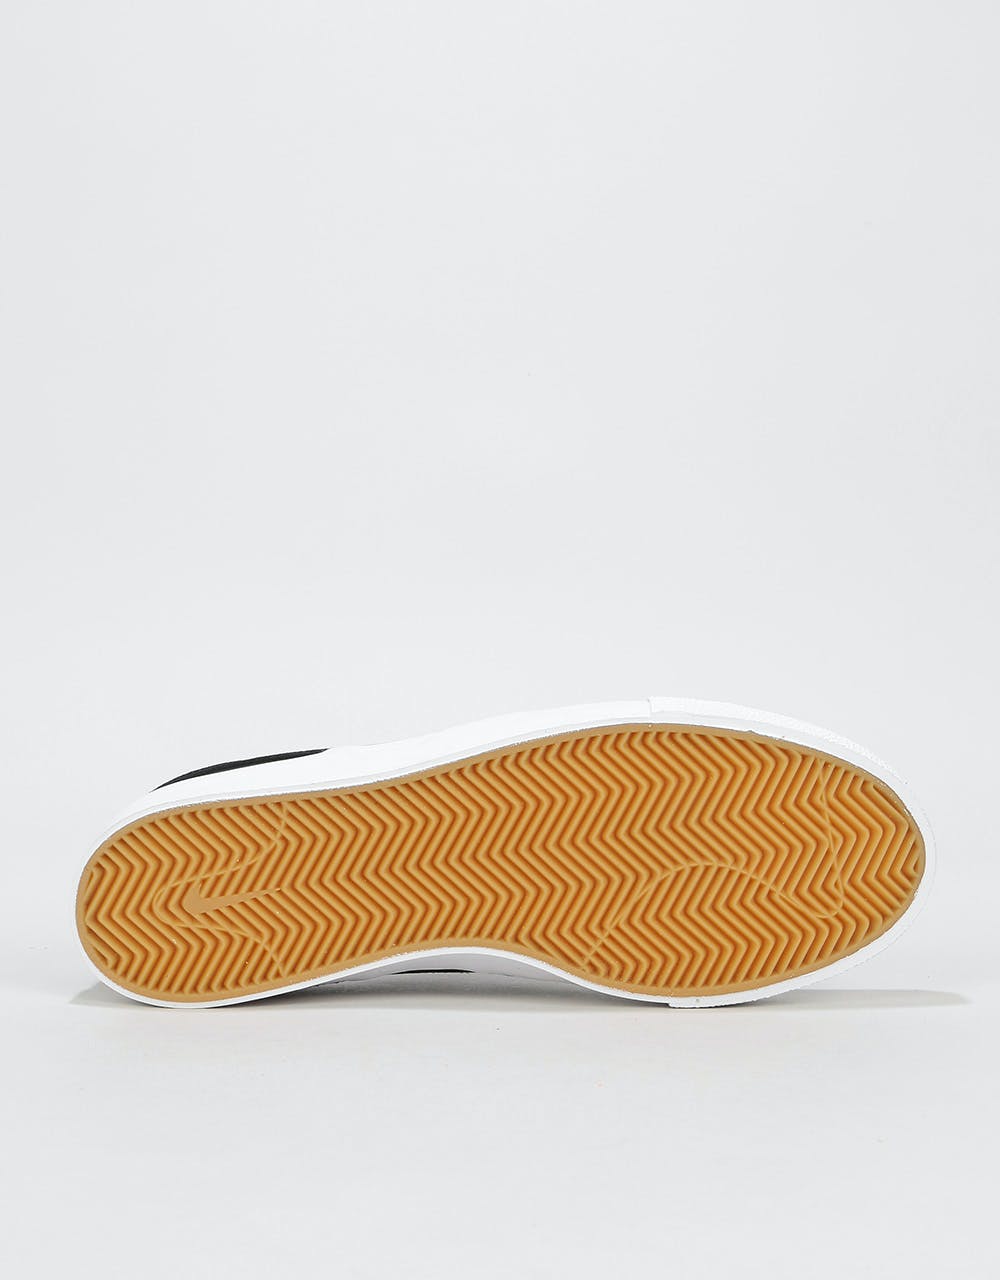 Nike SB Zoom Janoski Slip RM Skate Shoes - Black/White-White